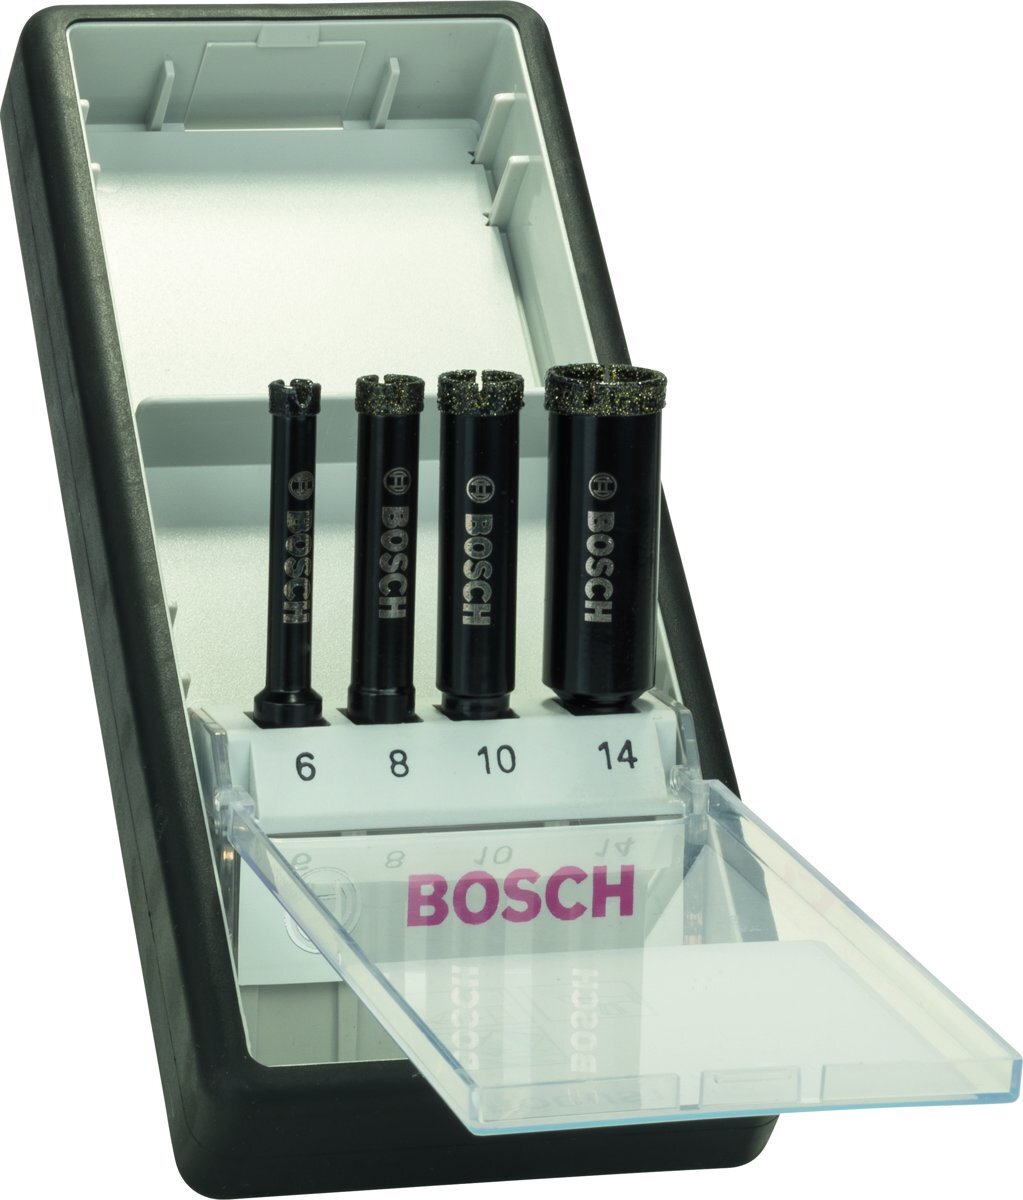 Bosch Bosch - 4-delige Robust Line set diamantboren voor nat boren 6; 8; 10; 14 mm